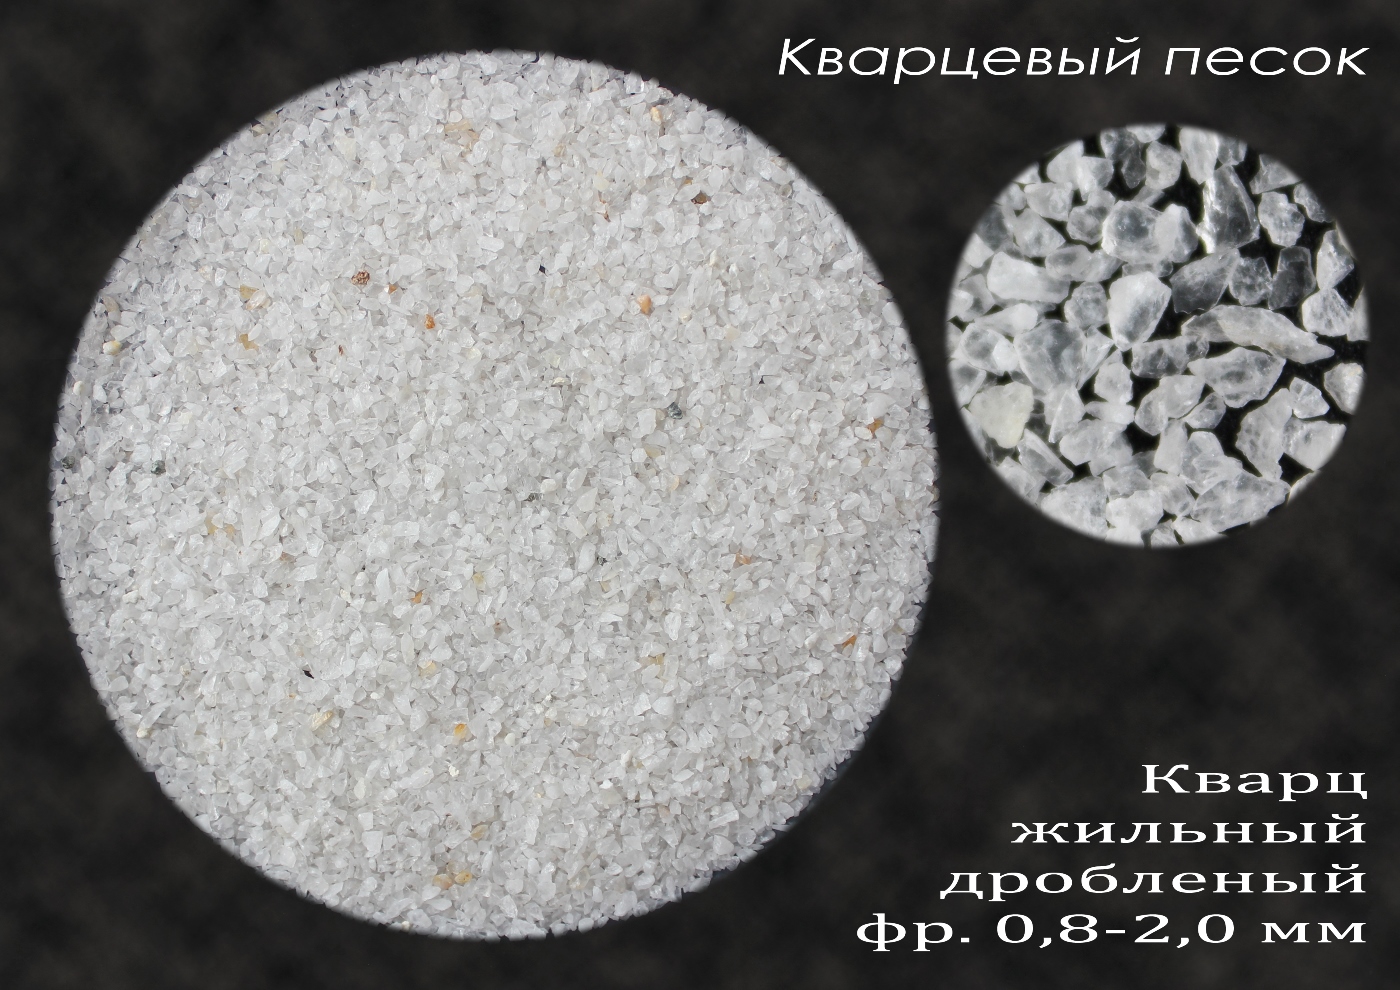 КУПИТЬ:  песок дробленый (кварц МКО) 0,8-2,0 по 25 кг от 320 .